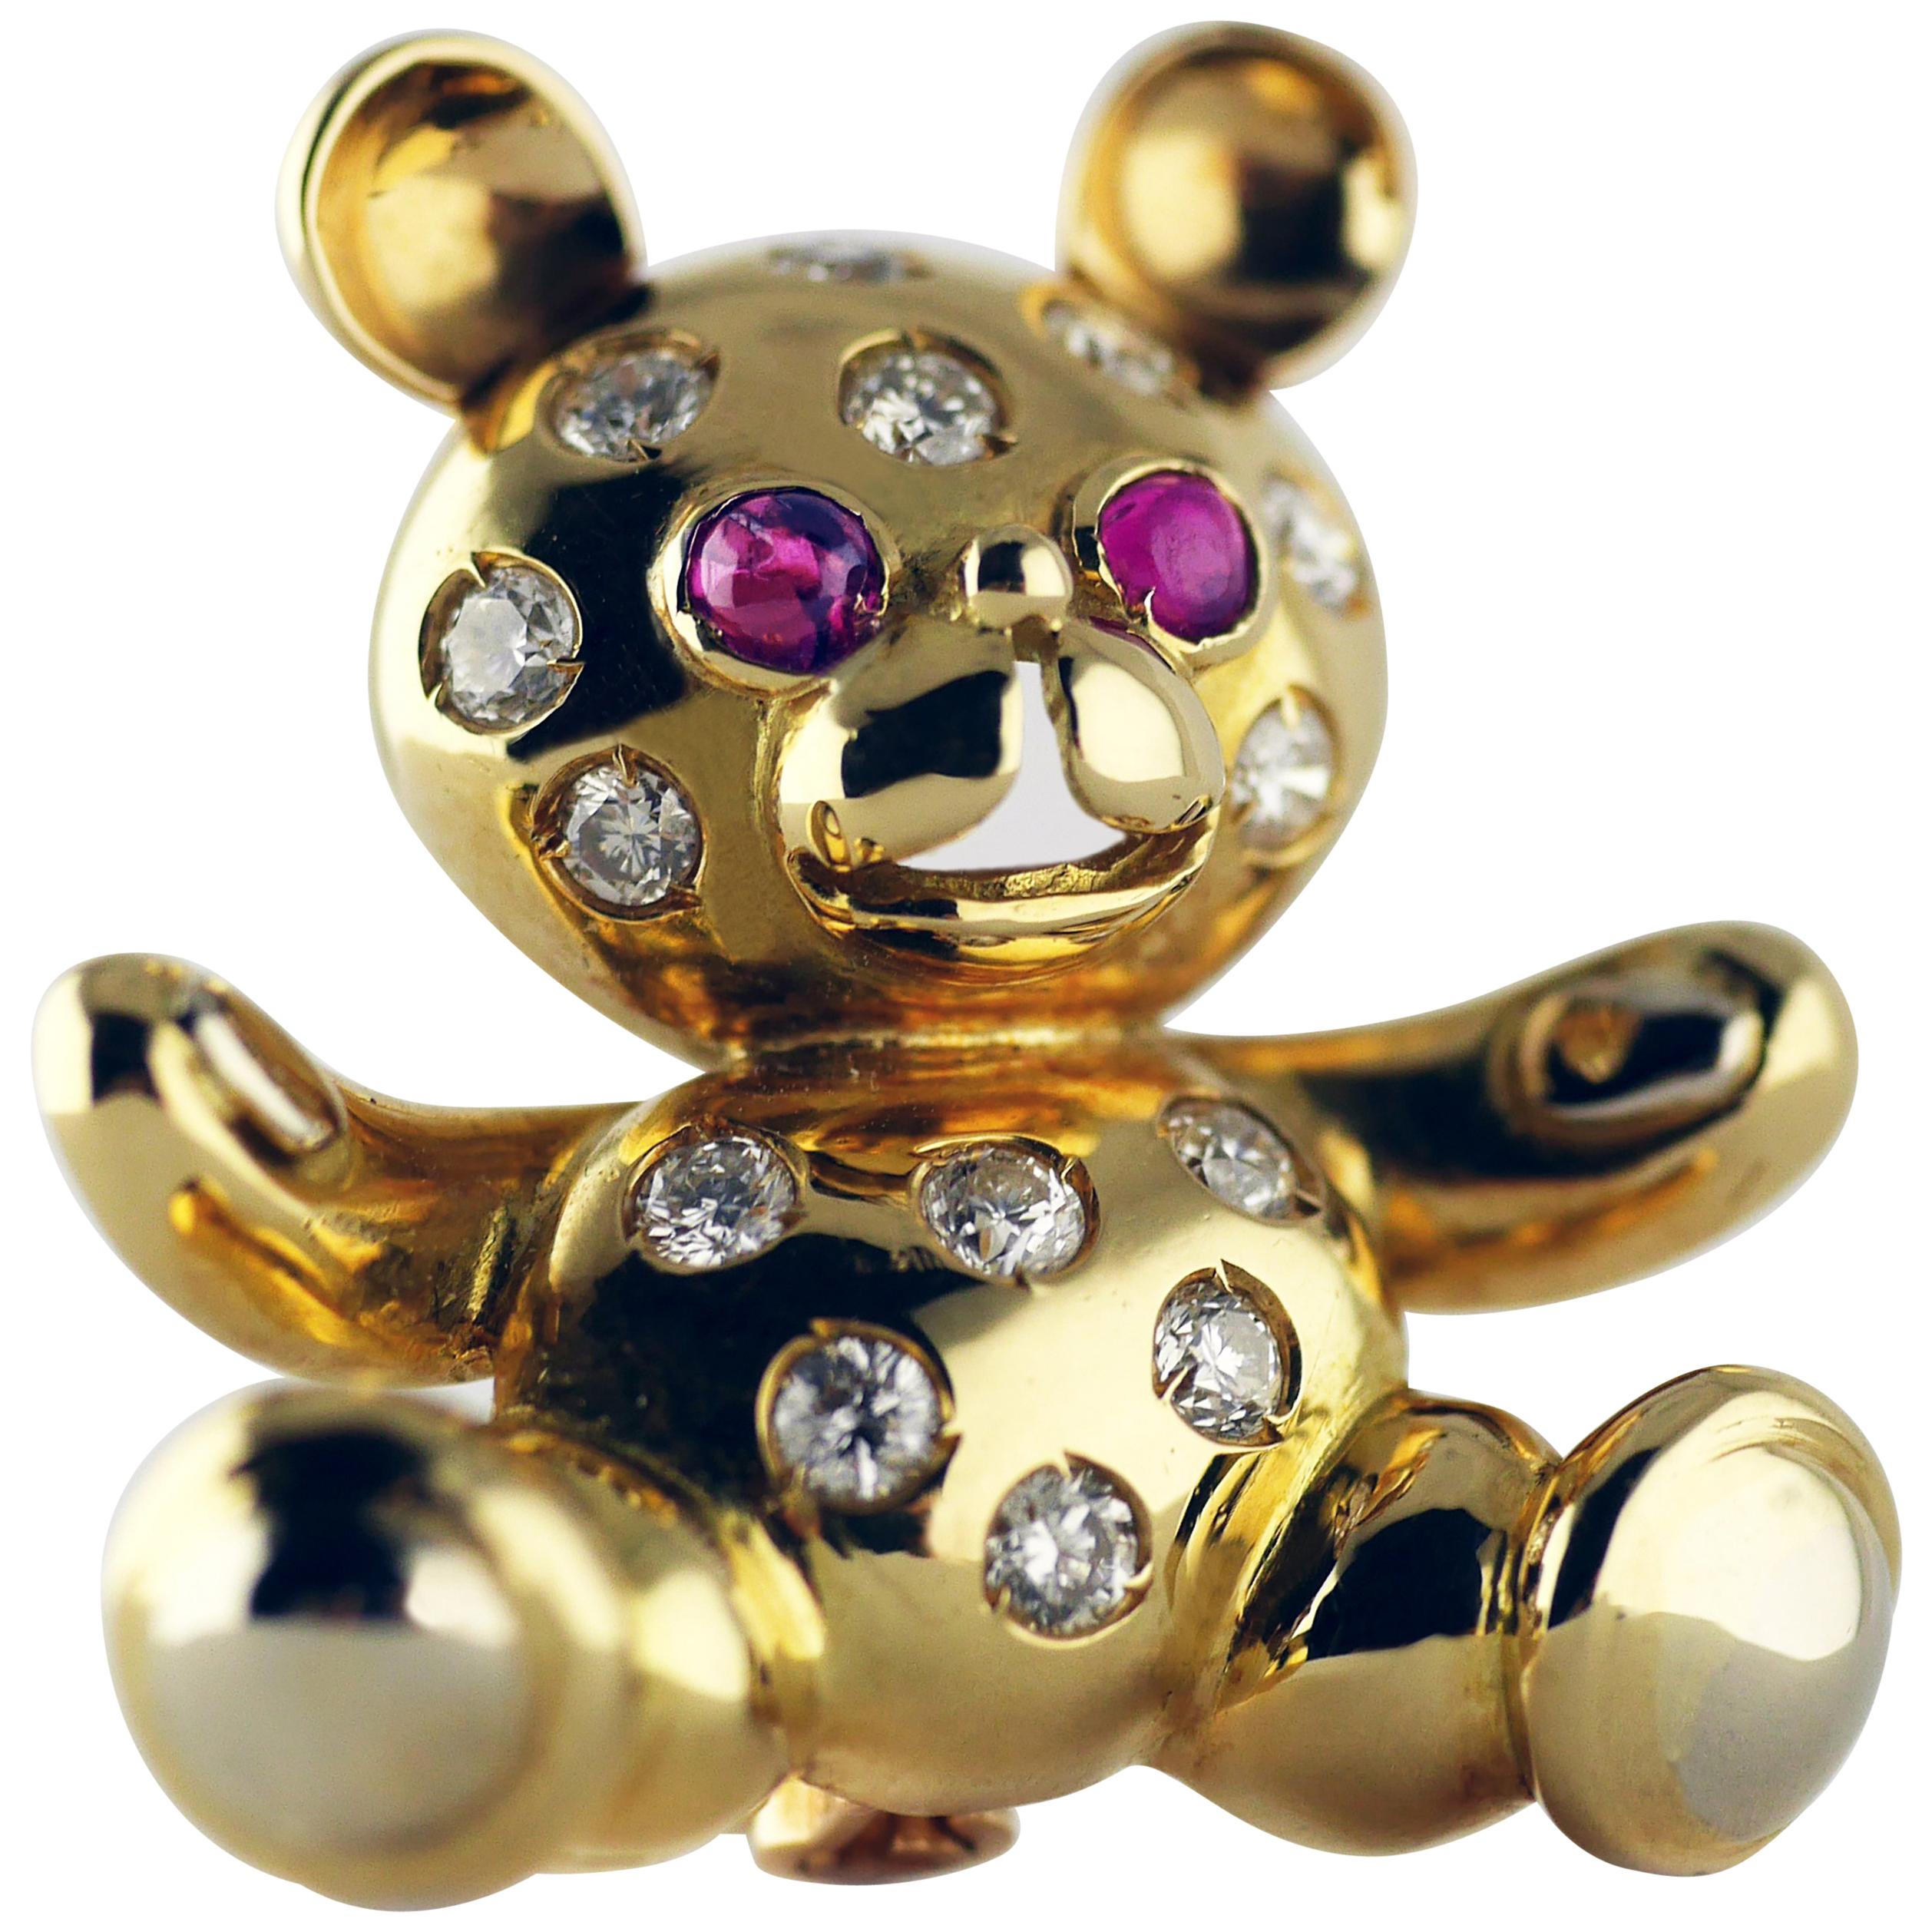 Teddybär-Brosche aus Gold mit Rubinen und Diamanten, um 1960